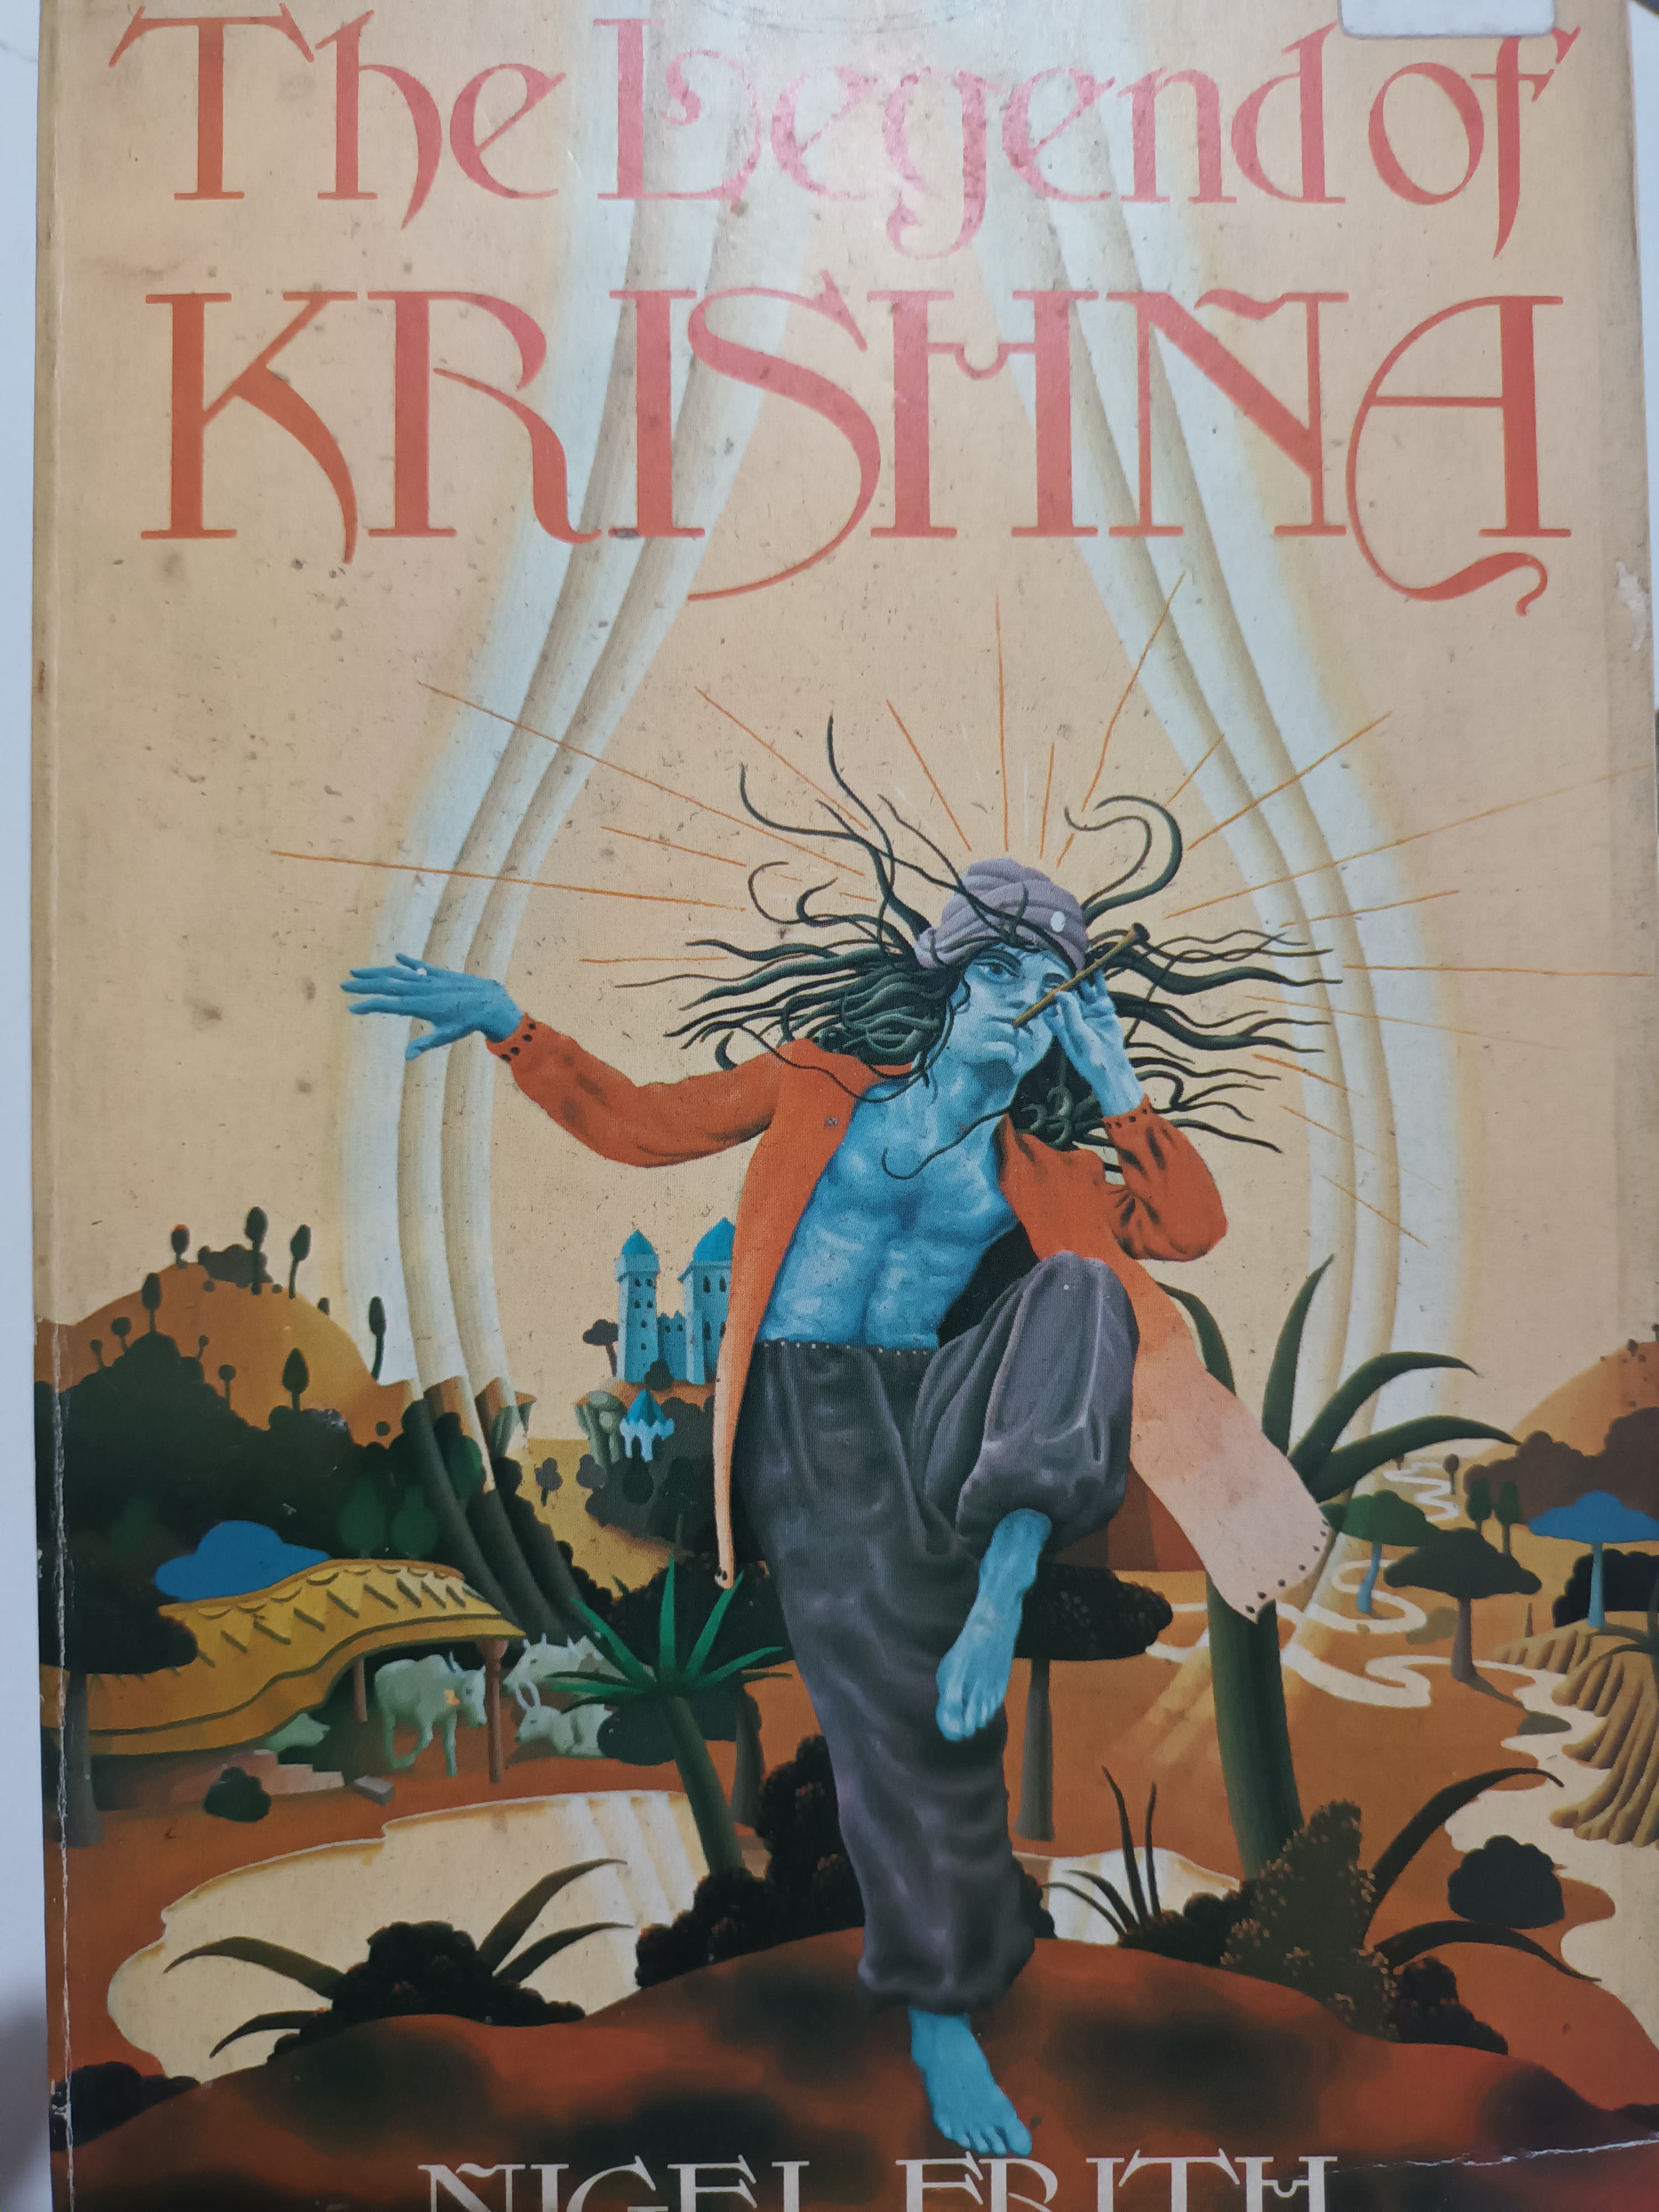 The legend of krishna